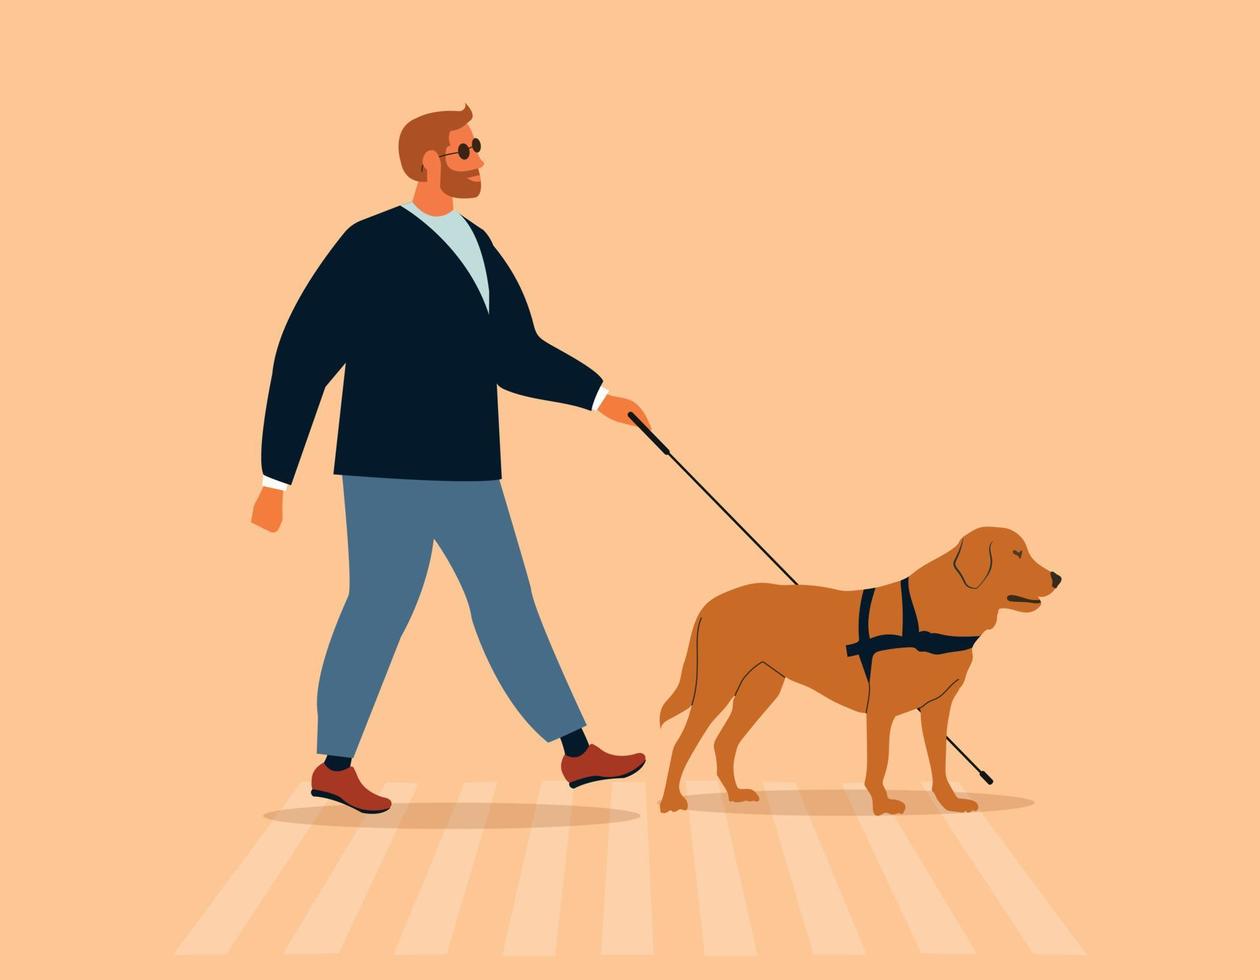 Mann mit einem Blindenhund zu Fuß. sehbehinderte oder blinde Person, die mit einem Stock und einem Labrador mit sehendem Auge einen Zebrastreifen überquert. inklusiver Stadtraum. isolierte flache vektorillustration vektor